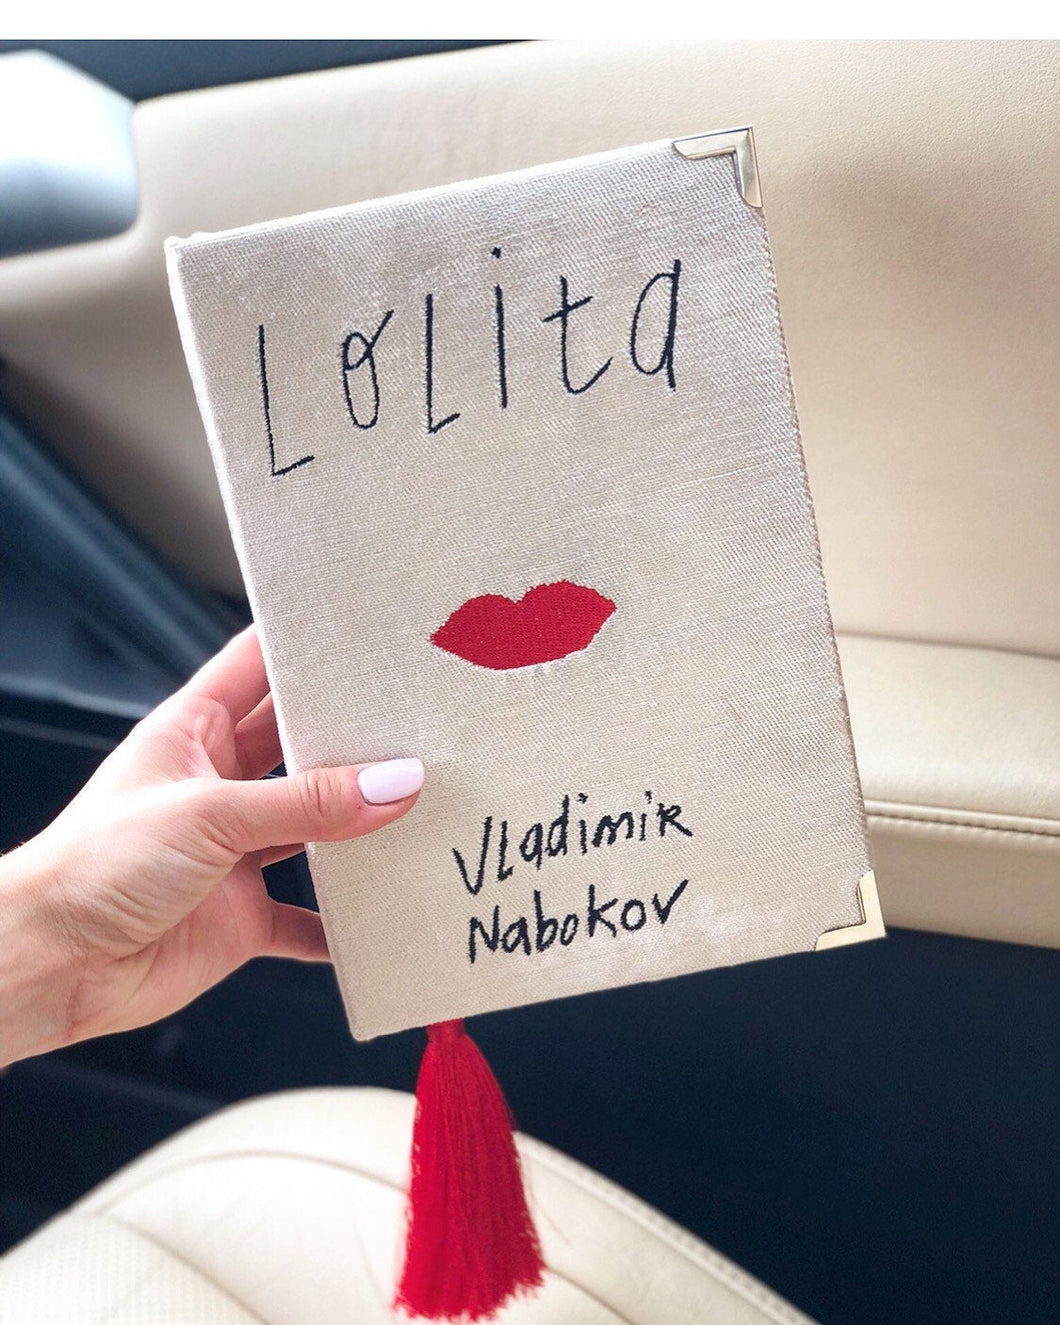 Book clutch purse - Lolita by Vladimir Nabokov - White velvet